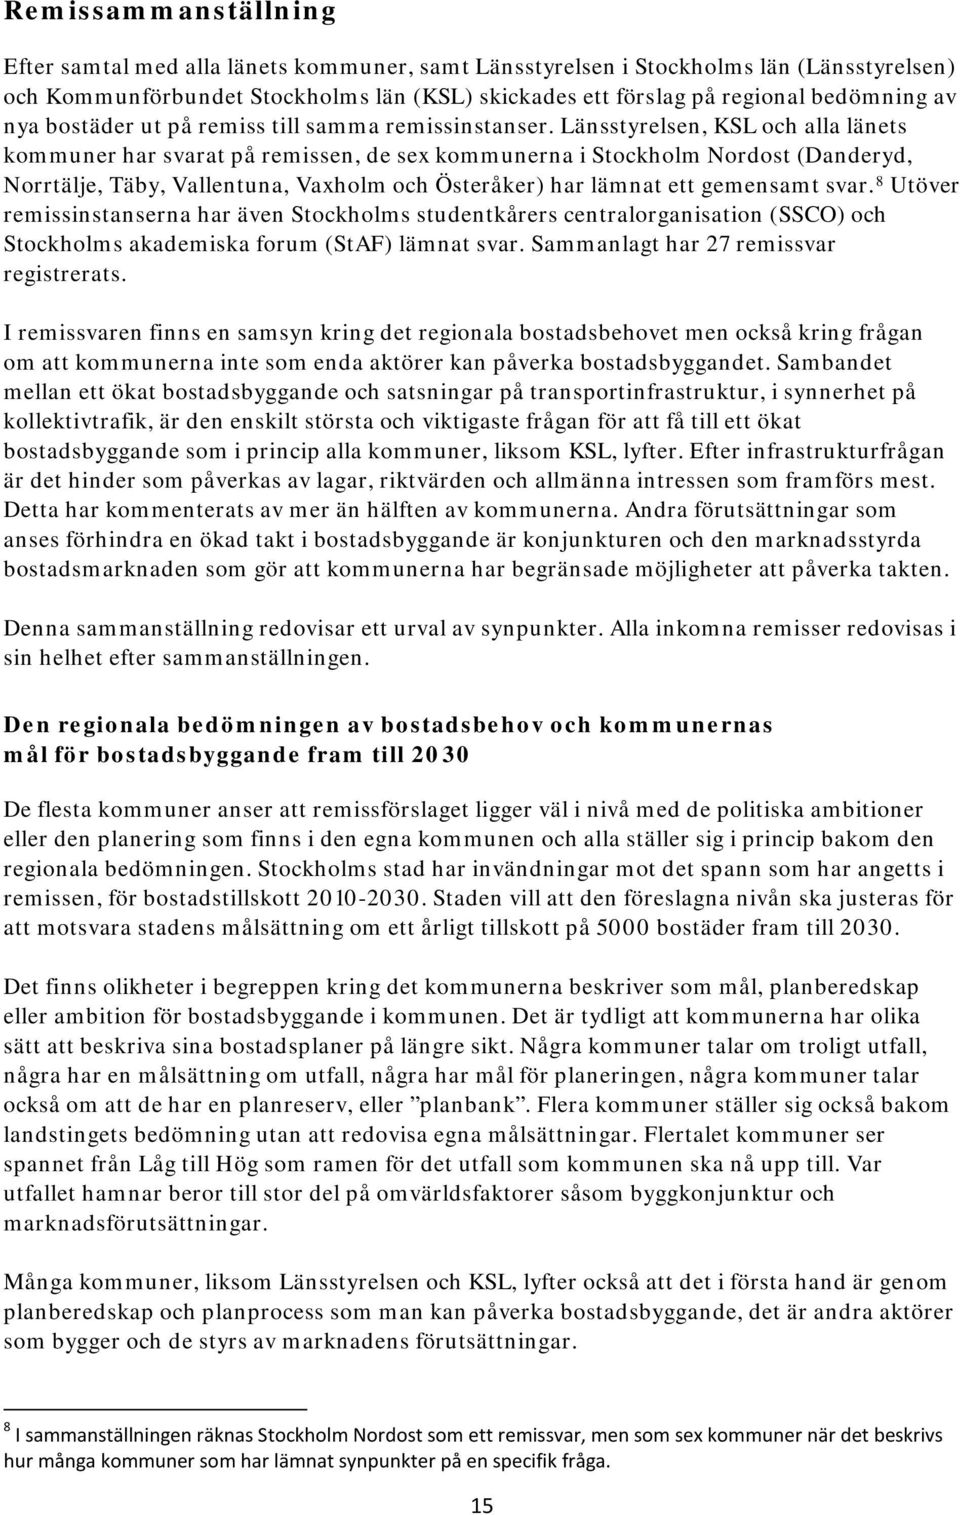 Länsstyrelsen, KSL och alla länets kommuner har svarat på remissen, de sex kommunerna i Stockholm Nordost (Danderyd, Norrtälje, Täby, Vallentuna, Vaxholm och Österåker) har lämnat ett gemensamt svar.